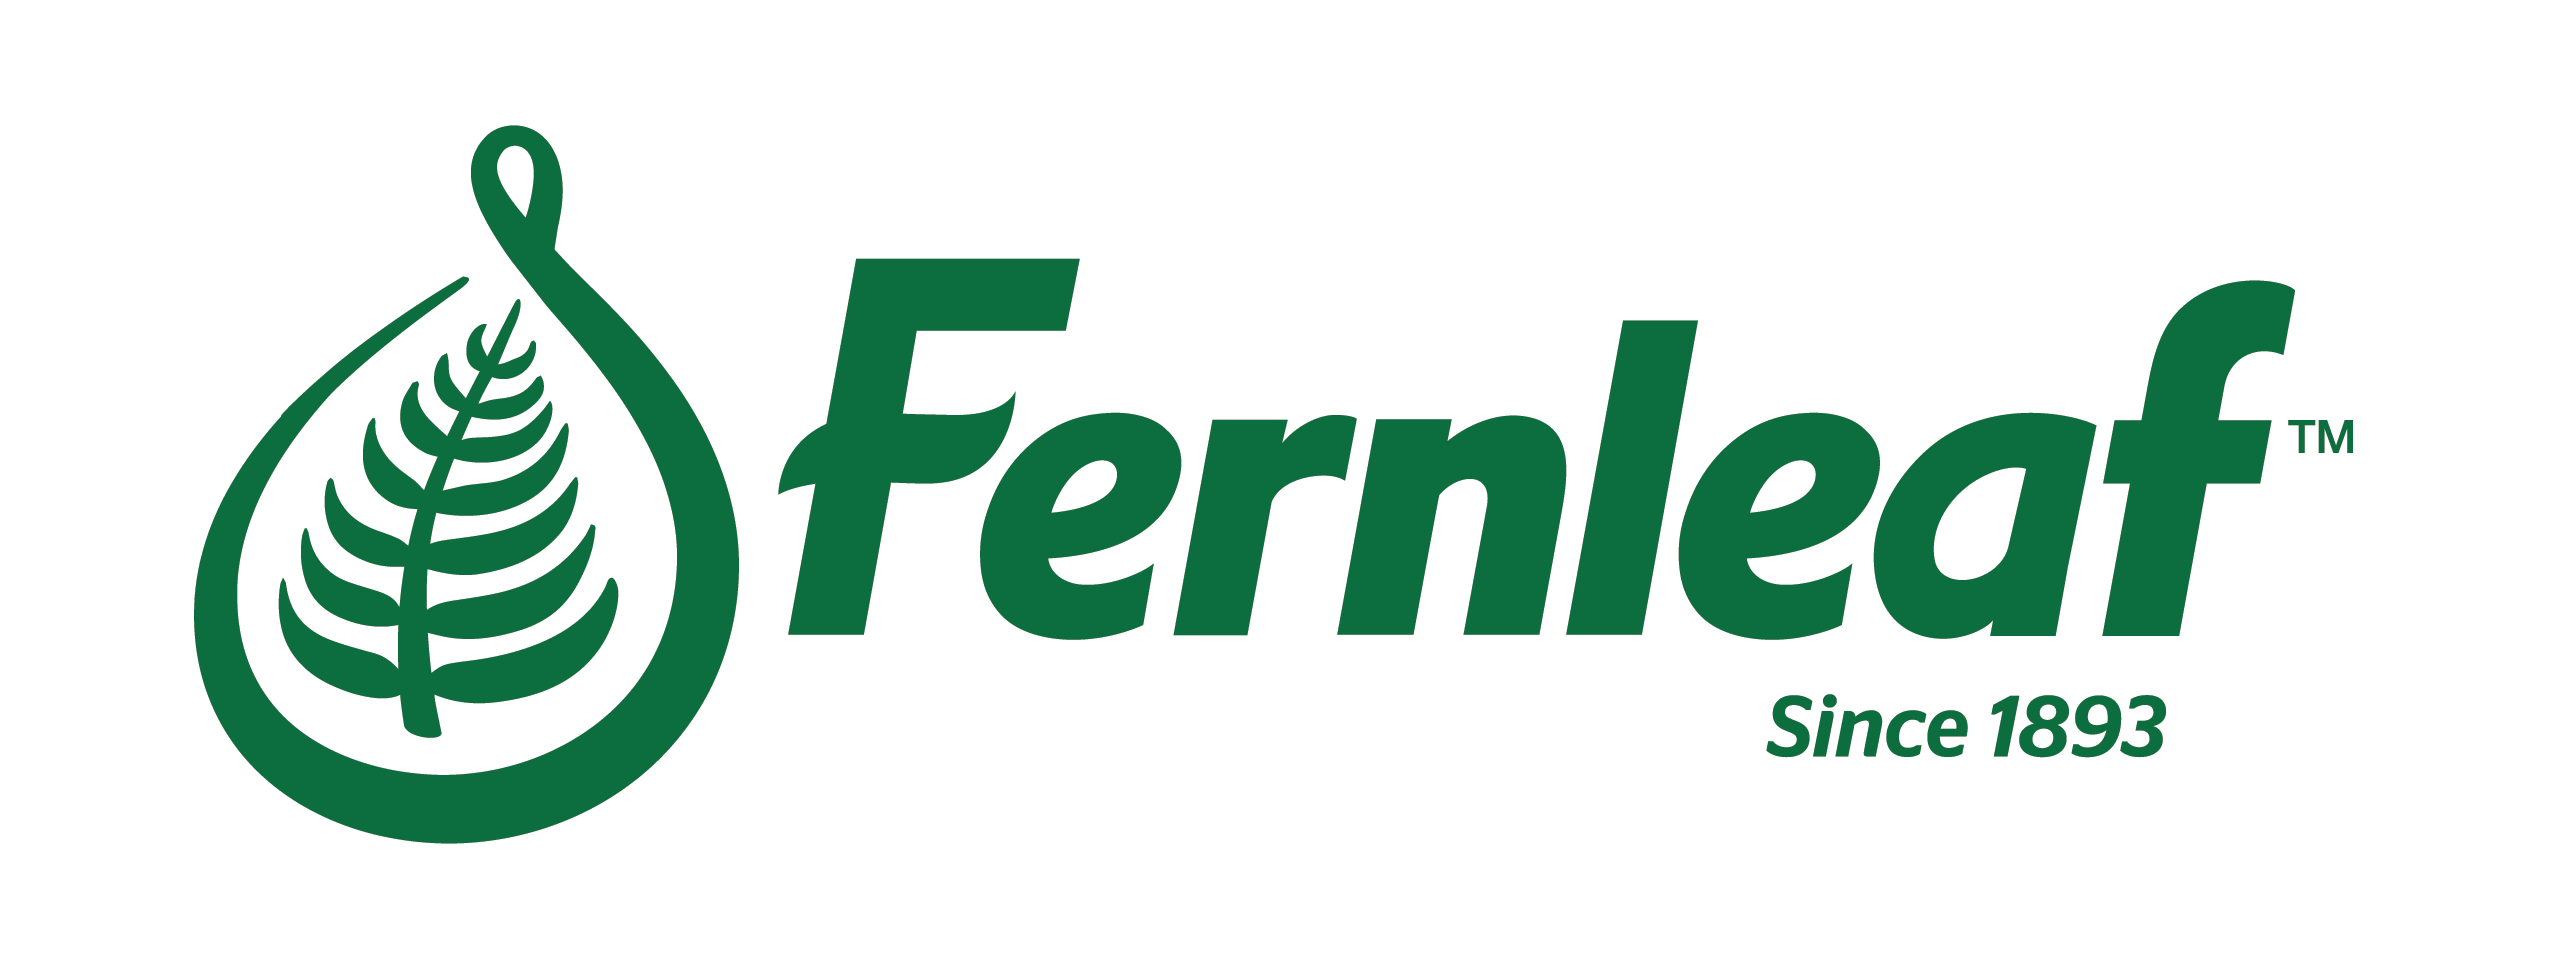 Fernleaf